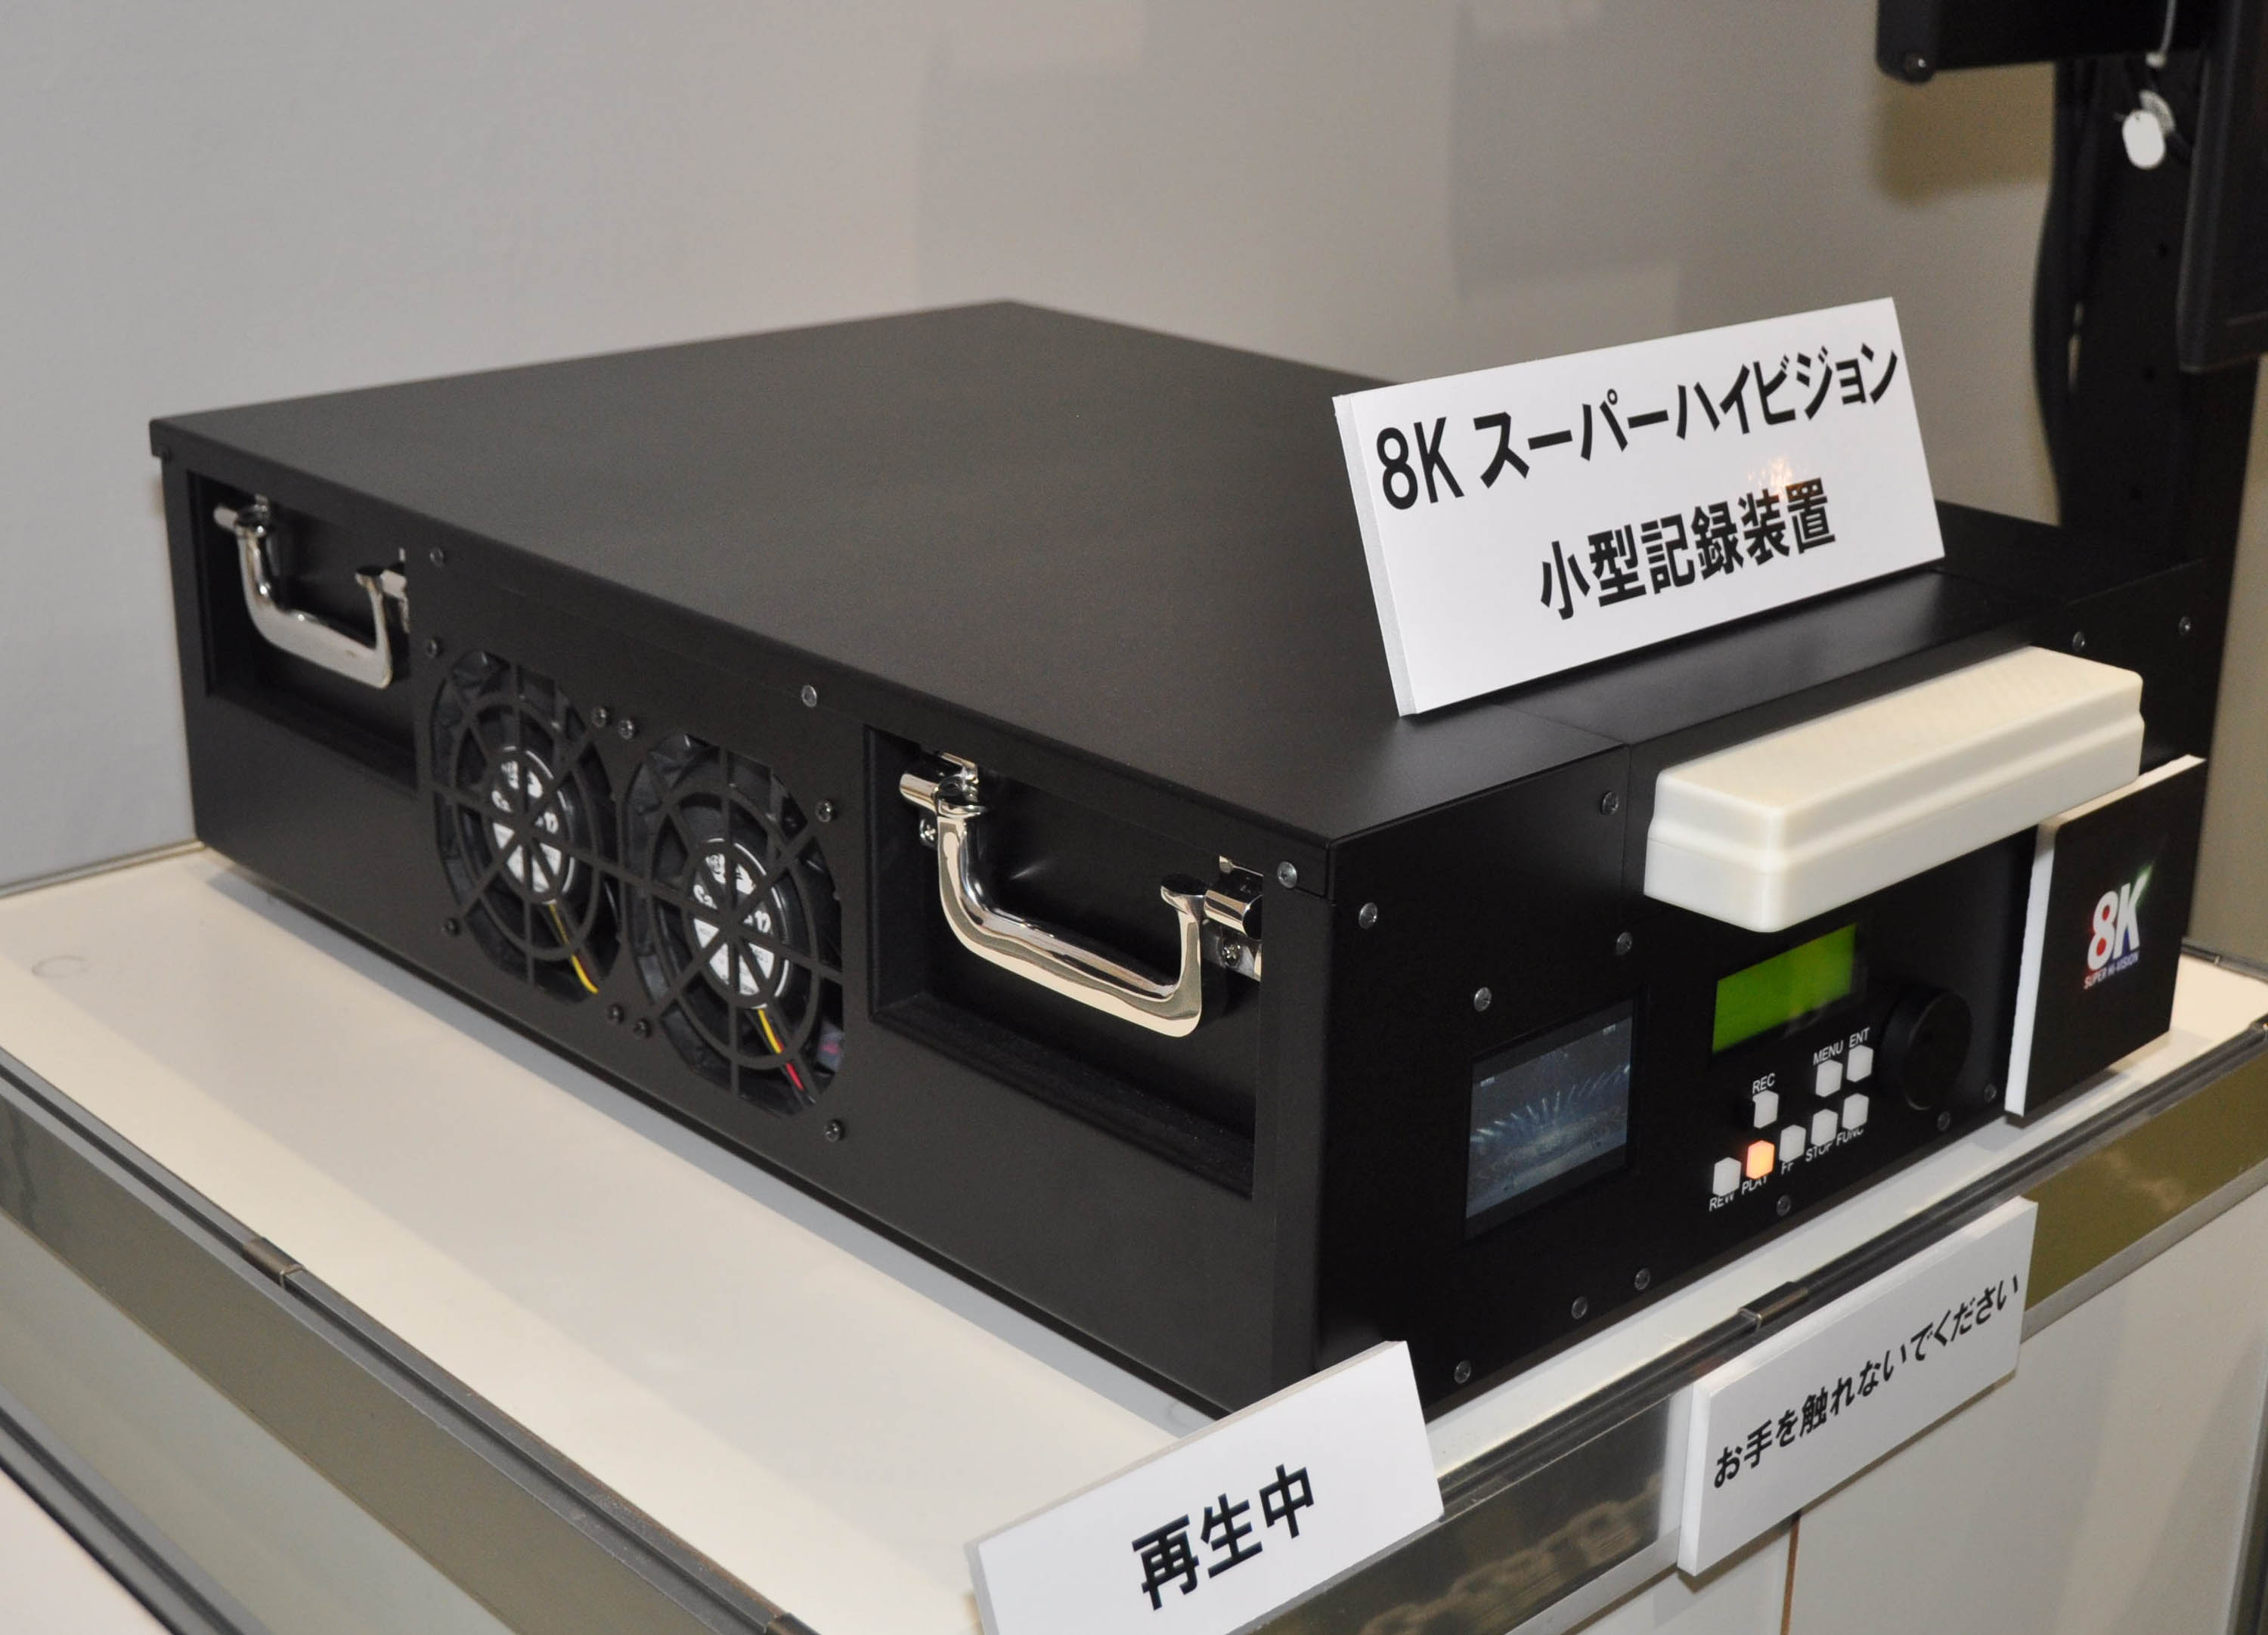 技研公開2014で展示された8KSHV小型記録装置